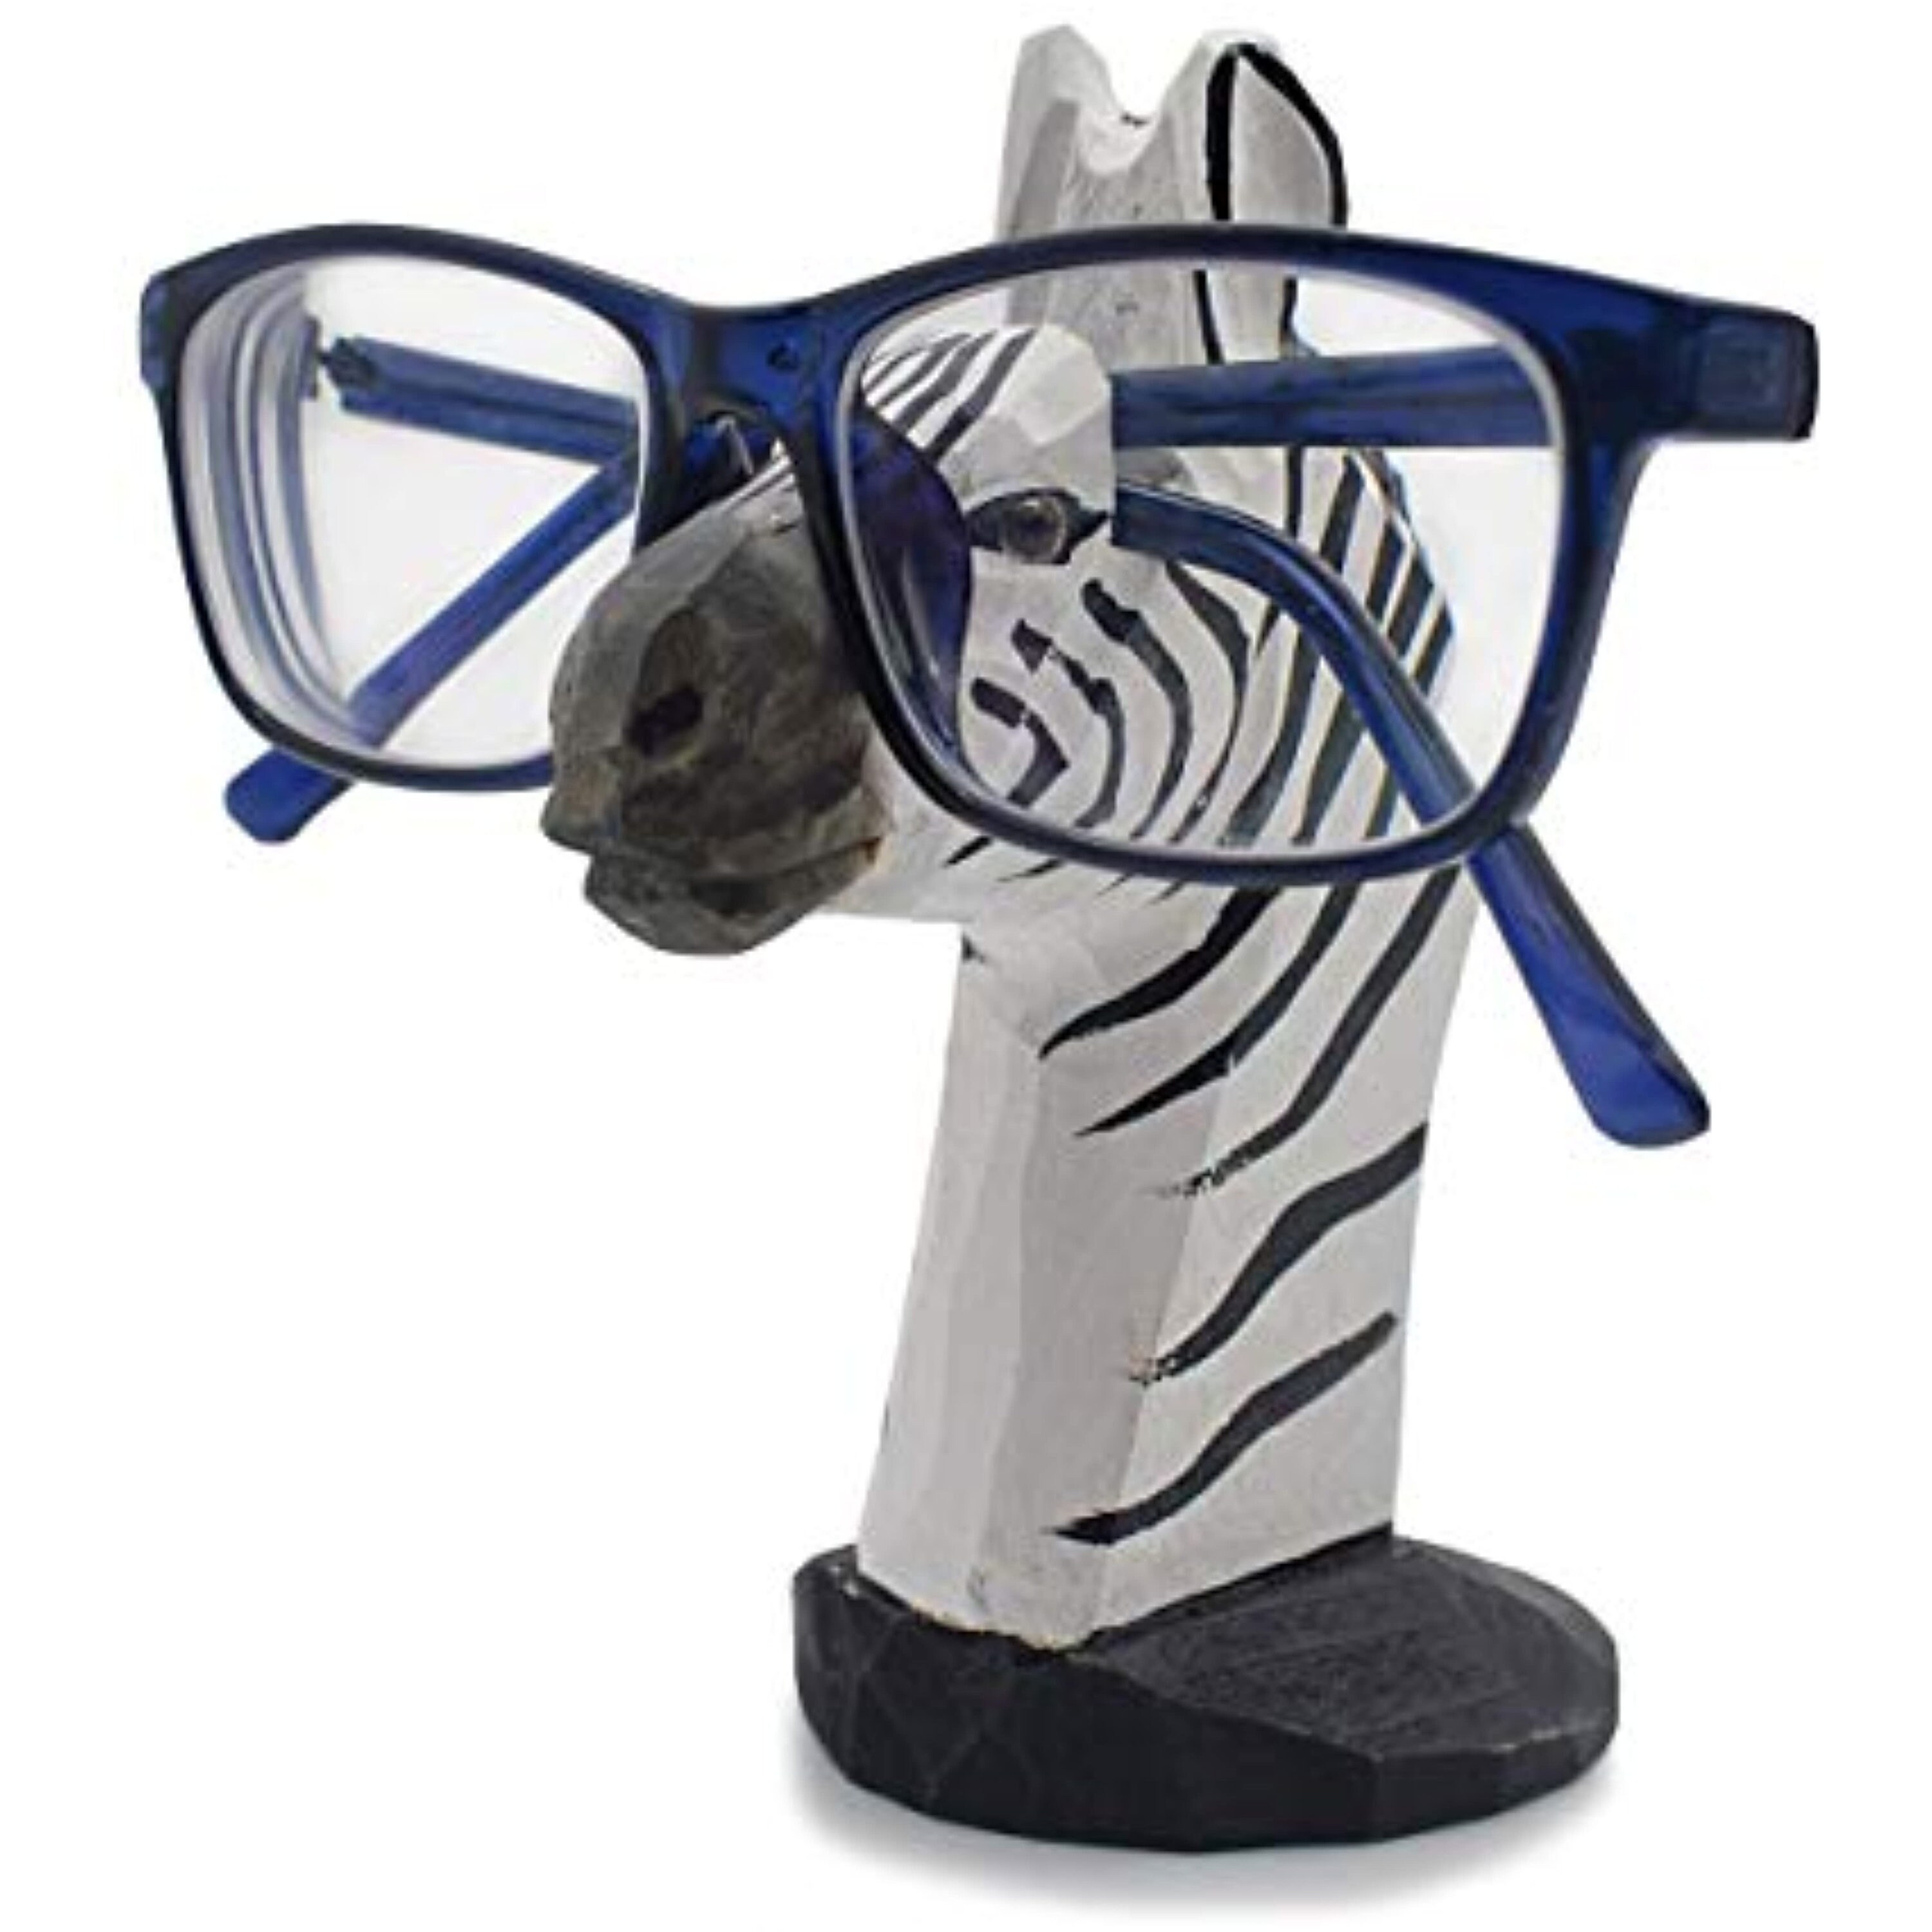 Accessoires Zonnebrillen & Eyewear Brillenstandaarden Houten houder staan voor mens brillen Gorgeous Best verjaardagscadeau of gewoon een cadeau Wij graveren als u dat wenst 